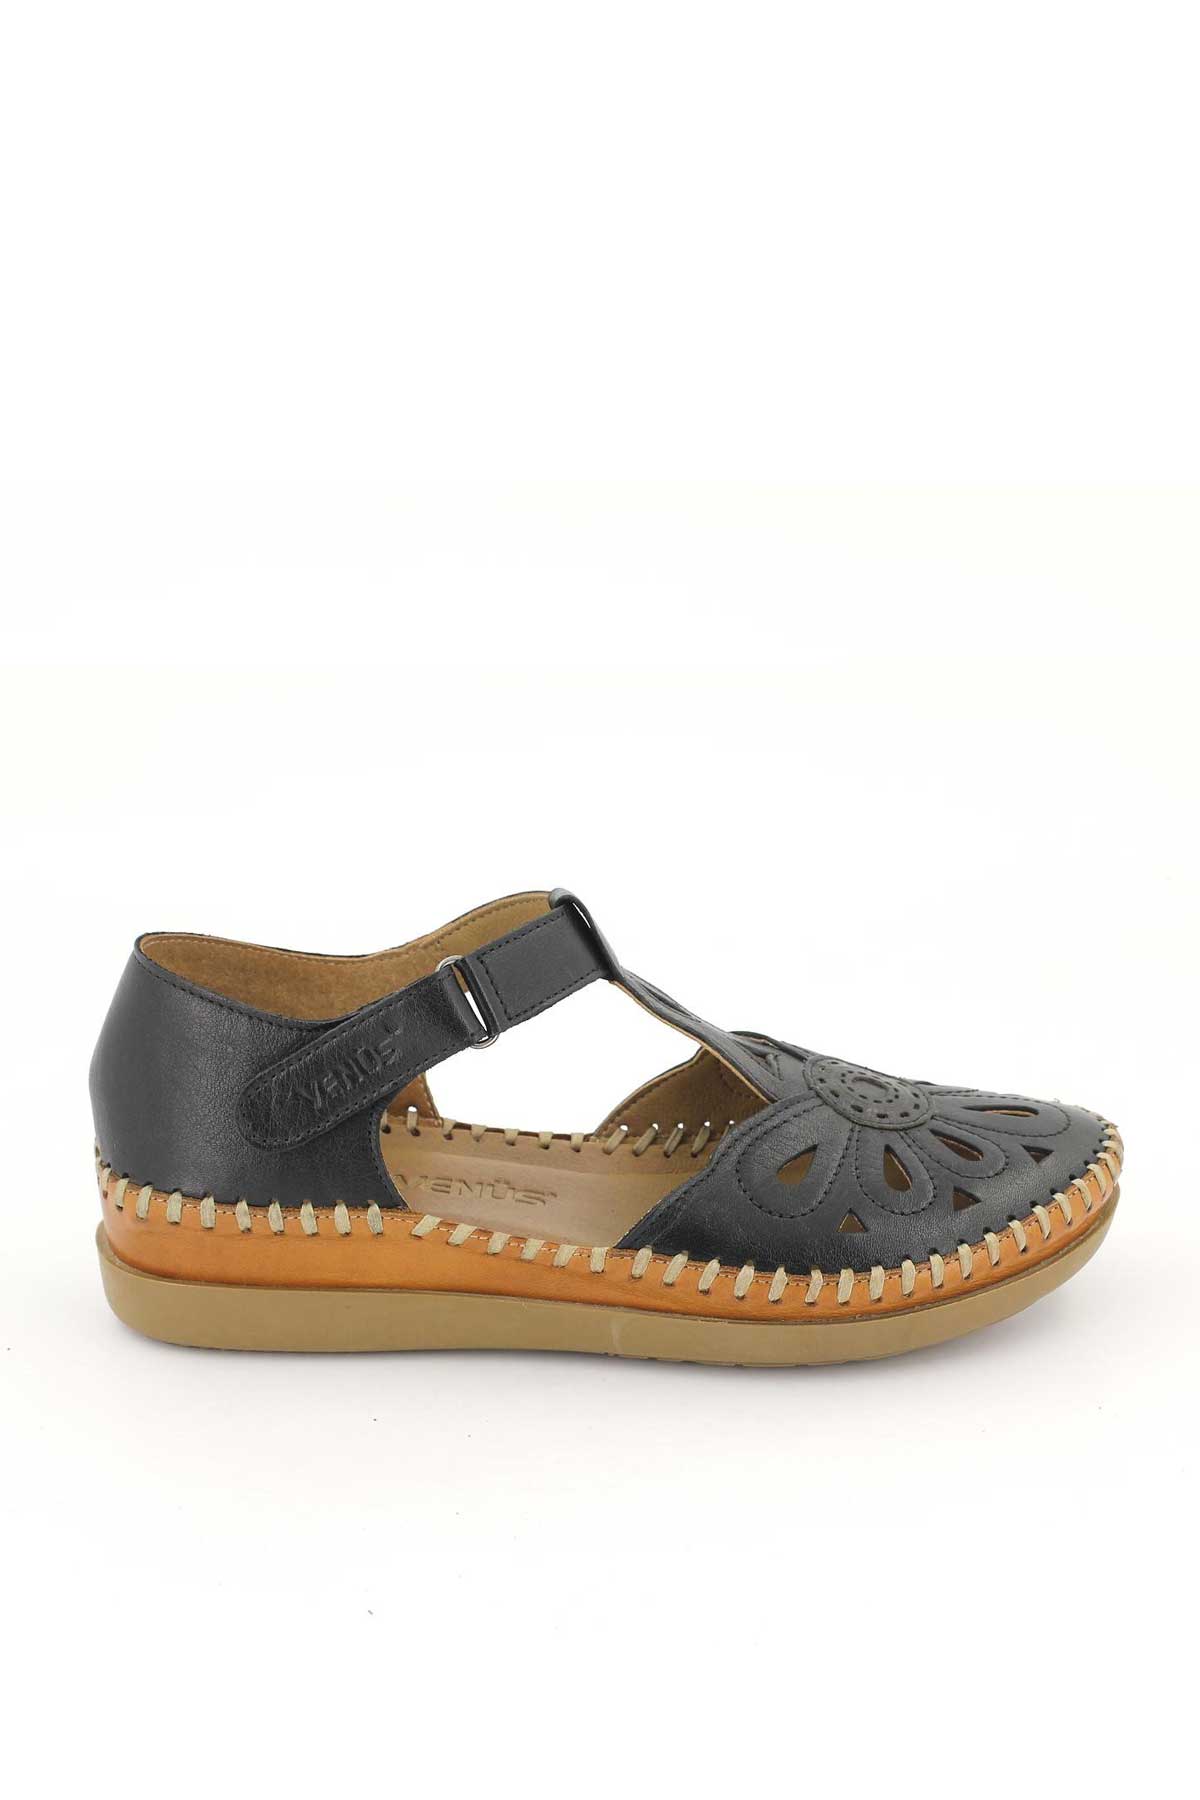 Kadın Comfort Sandalet Siyah 18793505